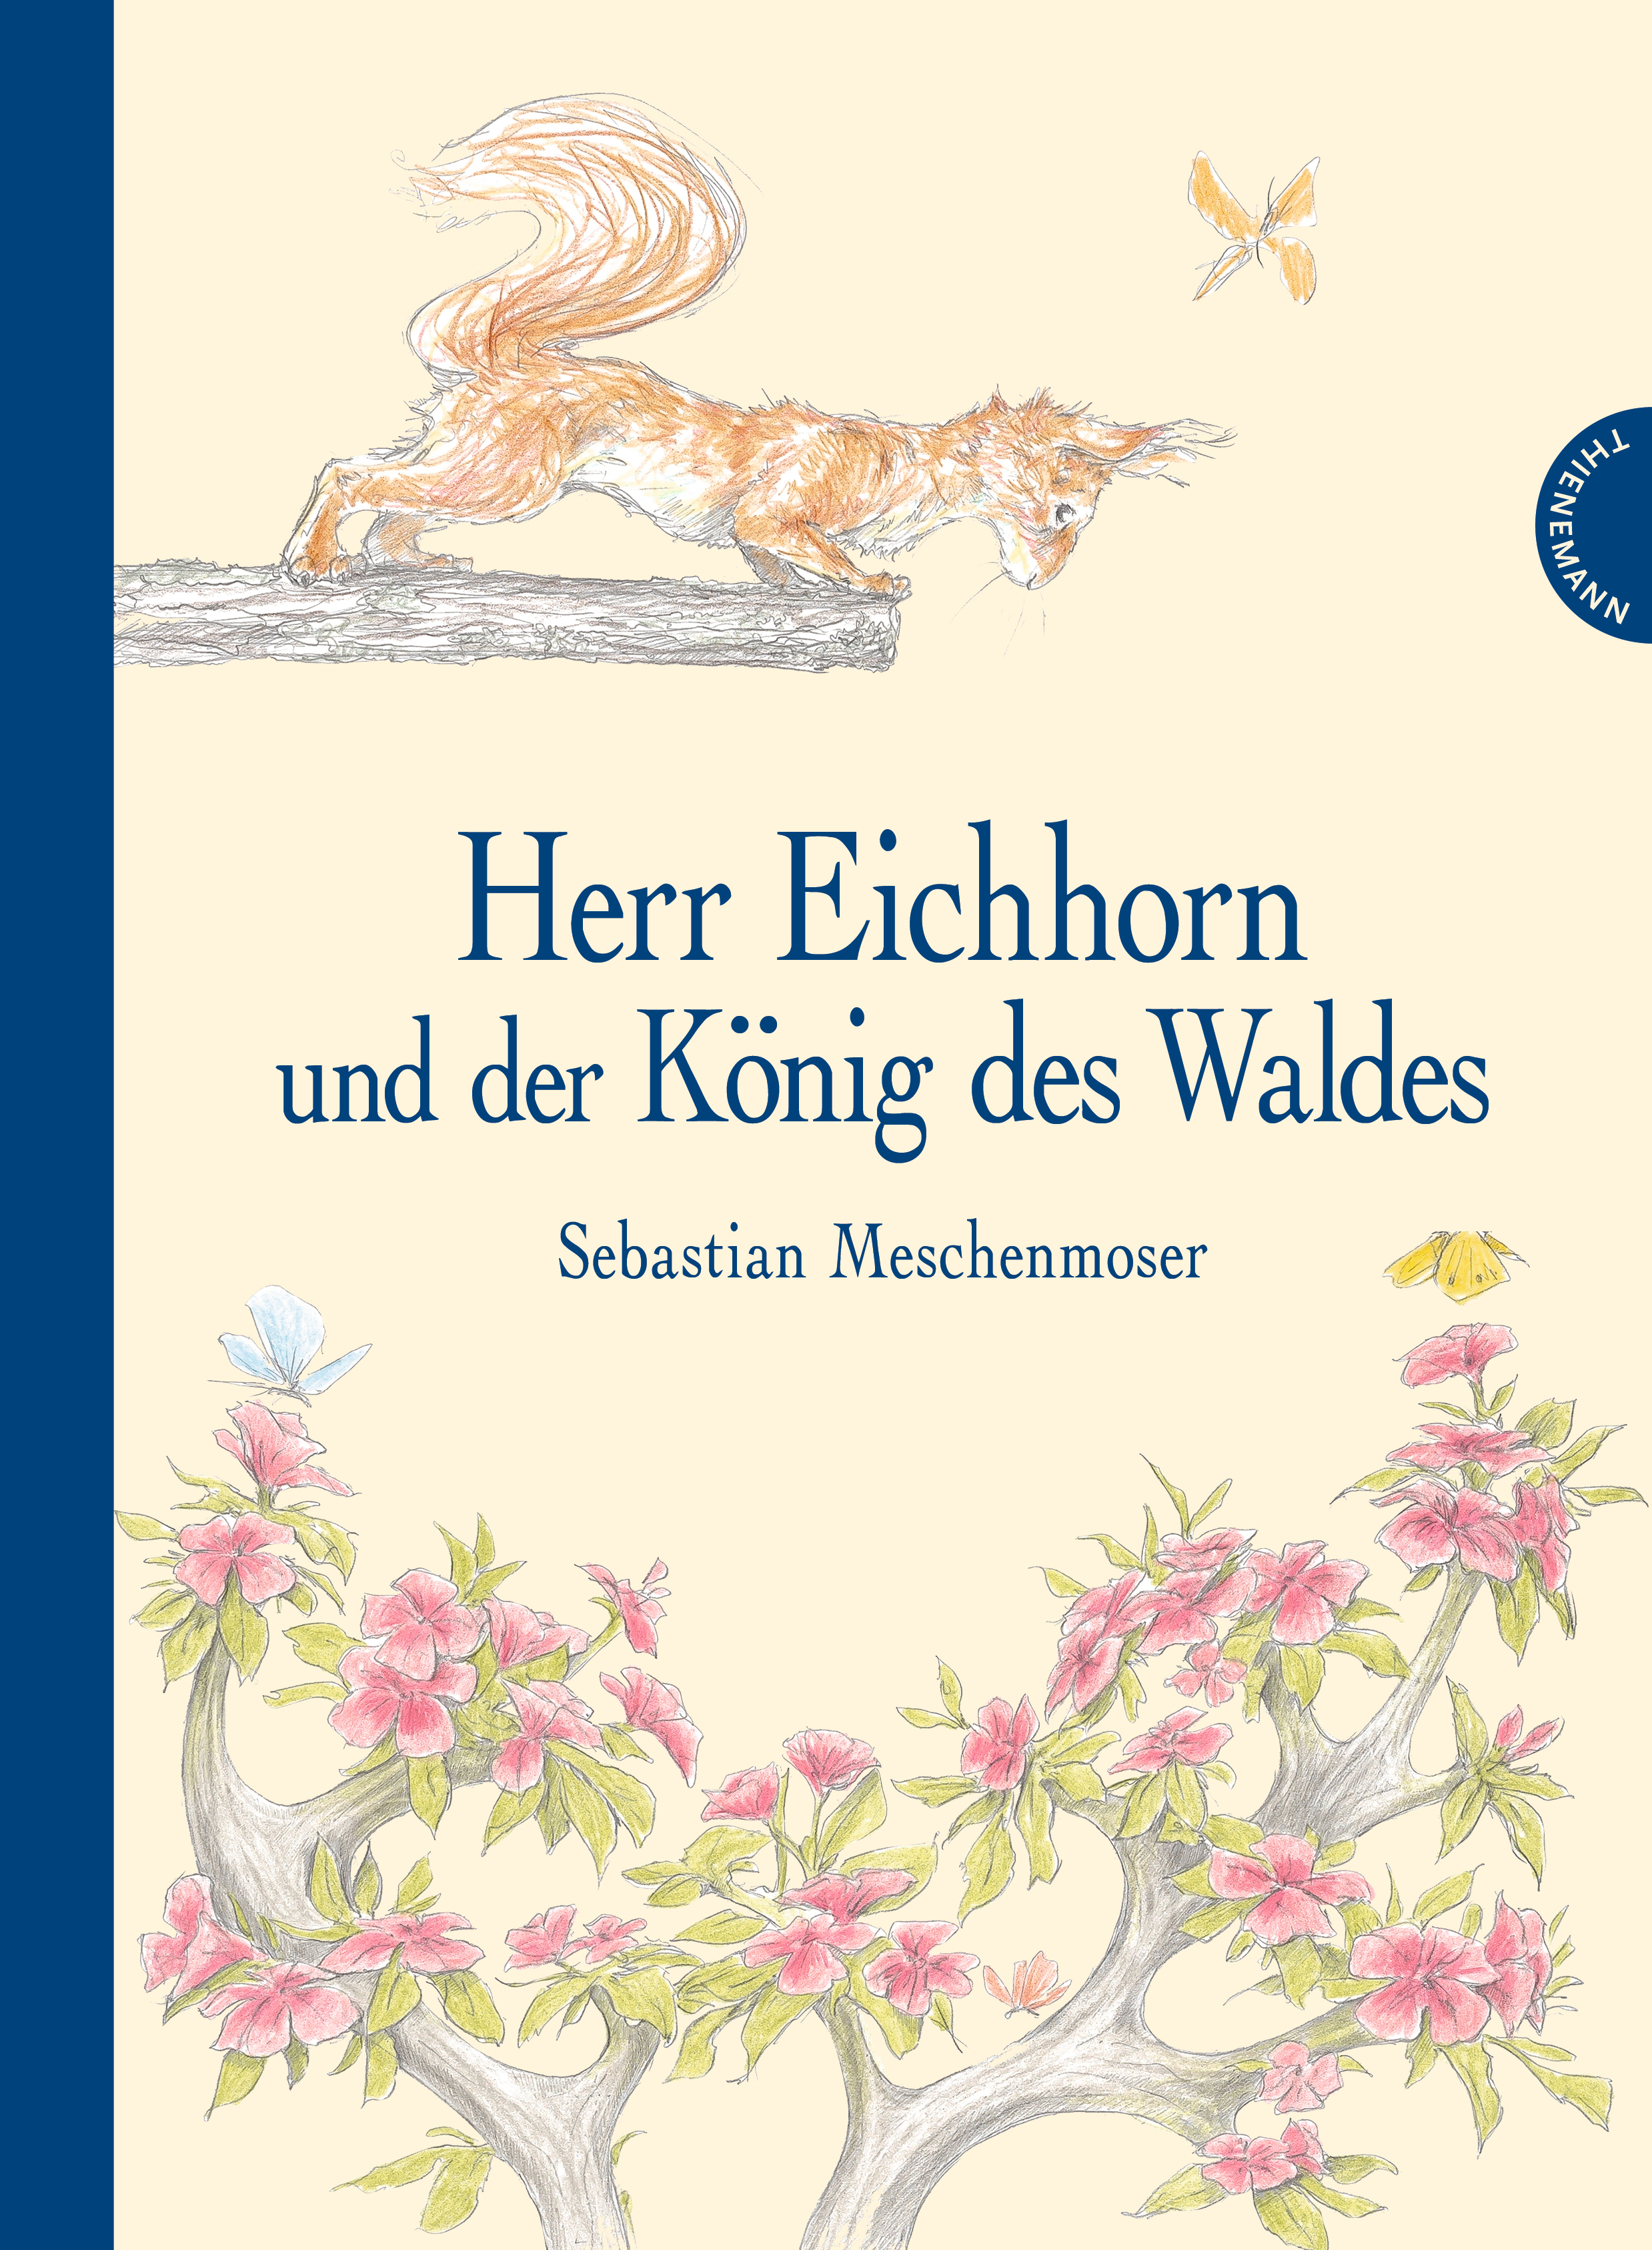 Cover des Kinderbuchs "Herr Eichhorn und der König des Waldes"